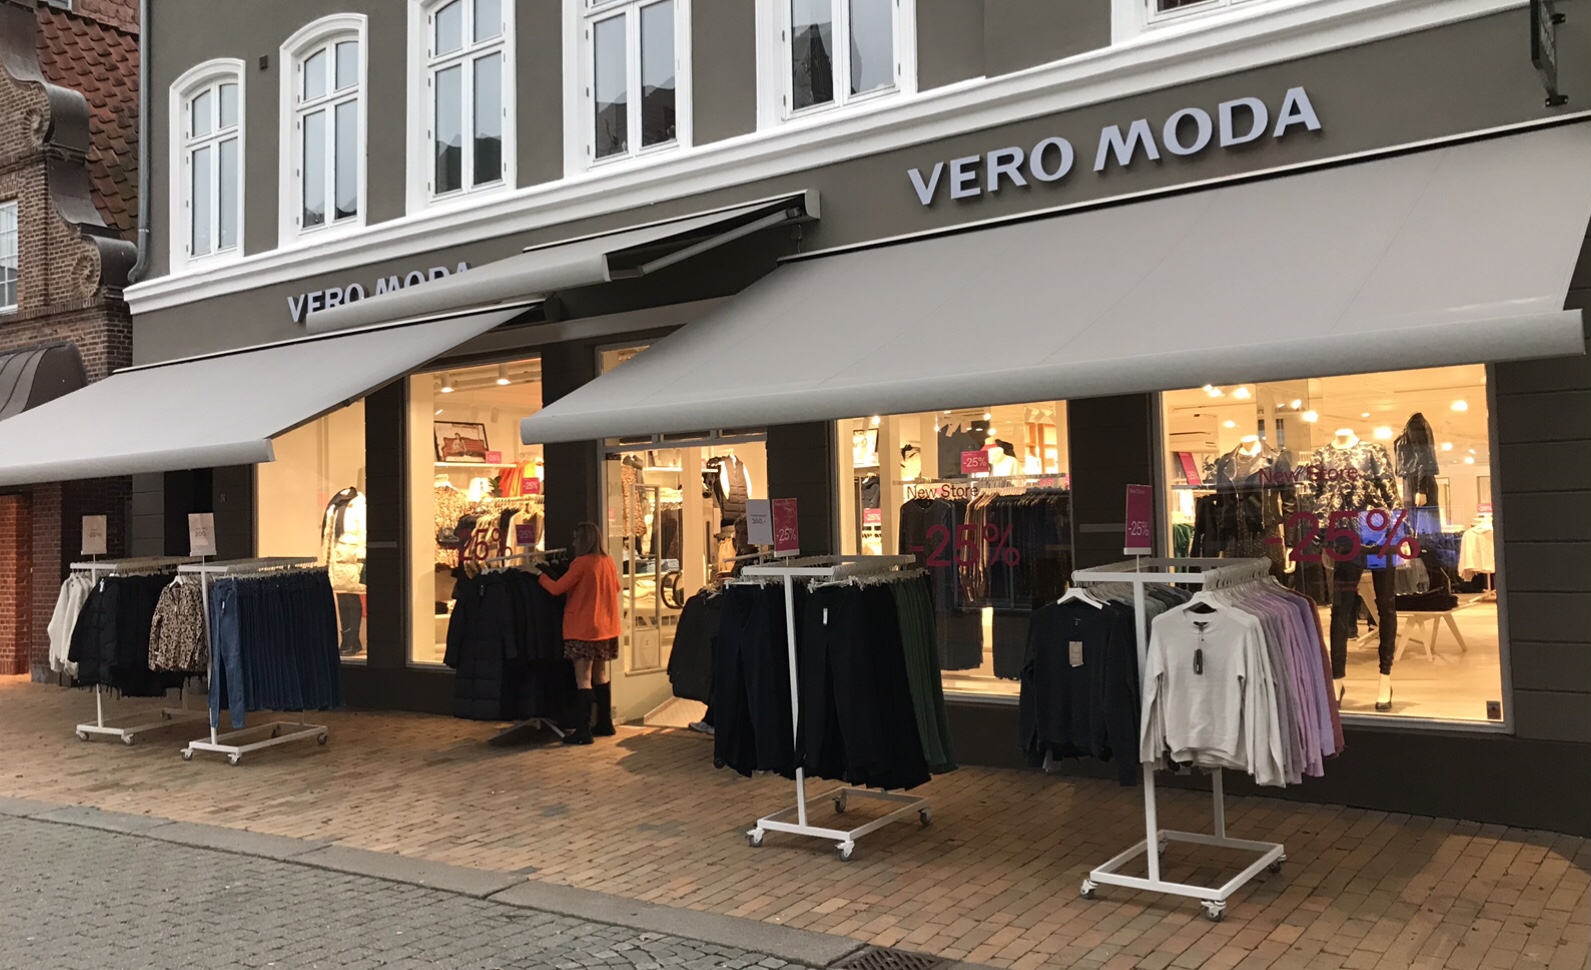 tapet Skrøbelig kost Tønder: Her til morgen åbnede den nye Vero Moda på gågaden - SE FOTOS -  Sydnyt.dk - Lokale nyheder fra Sønderjylland